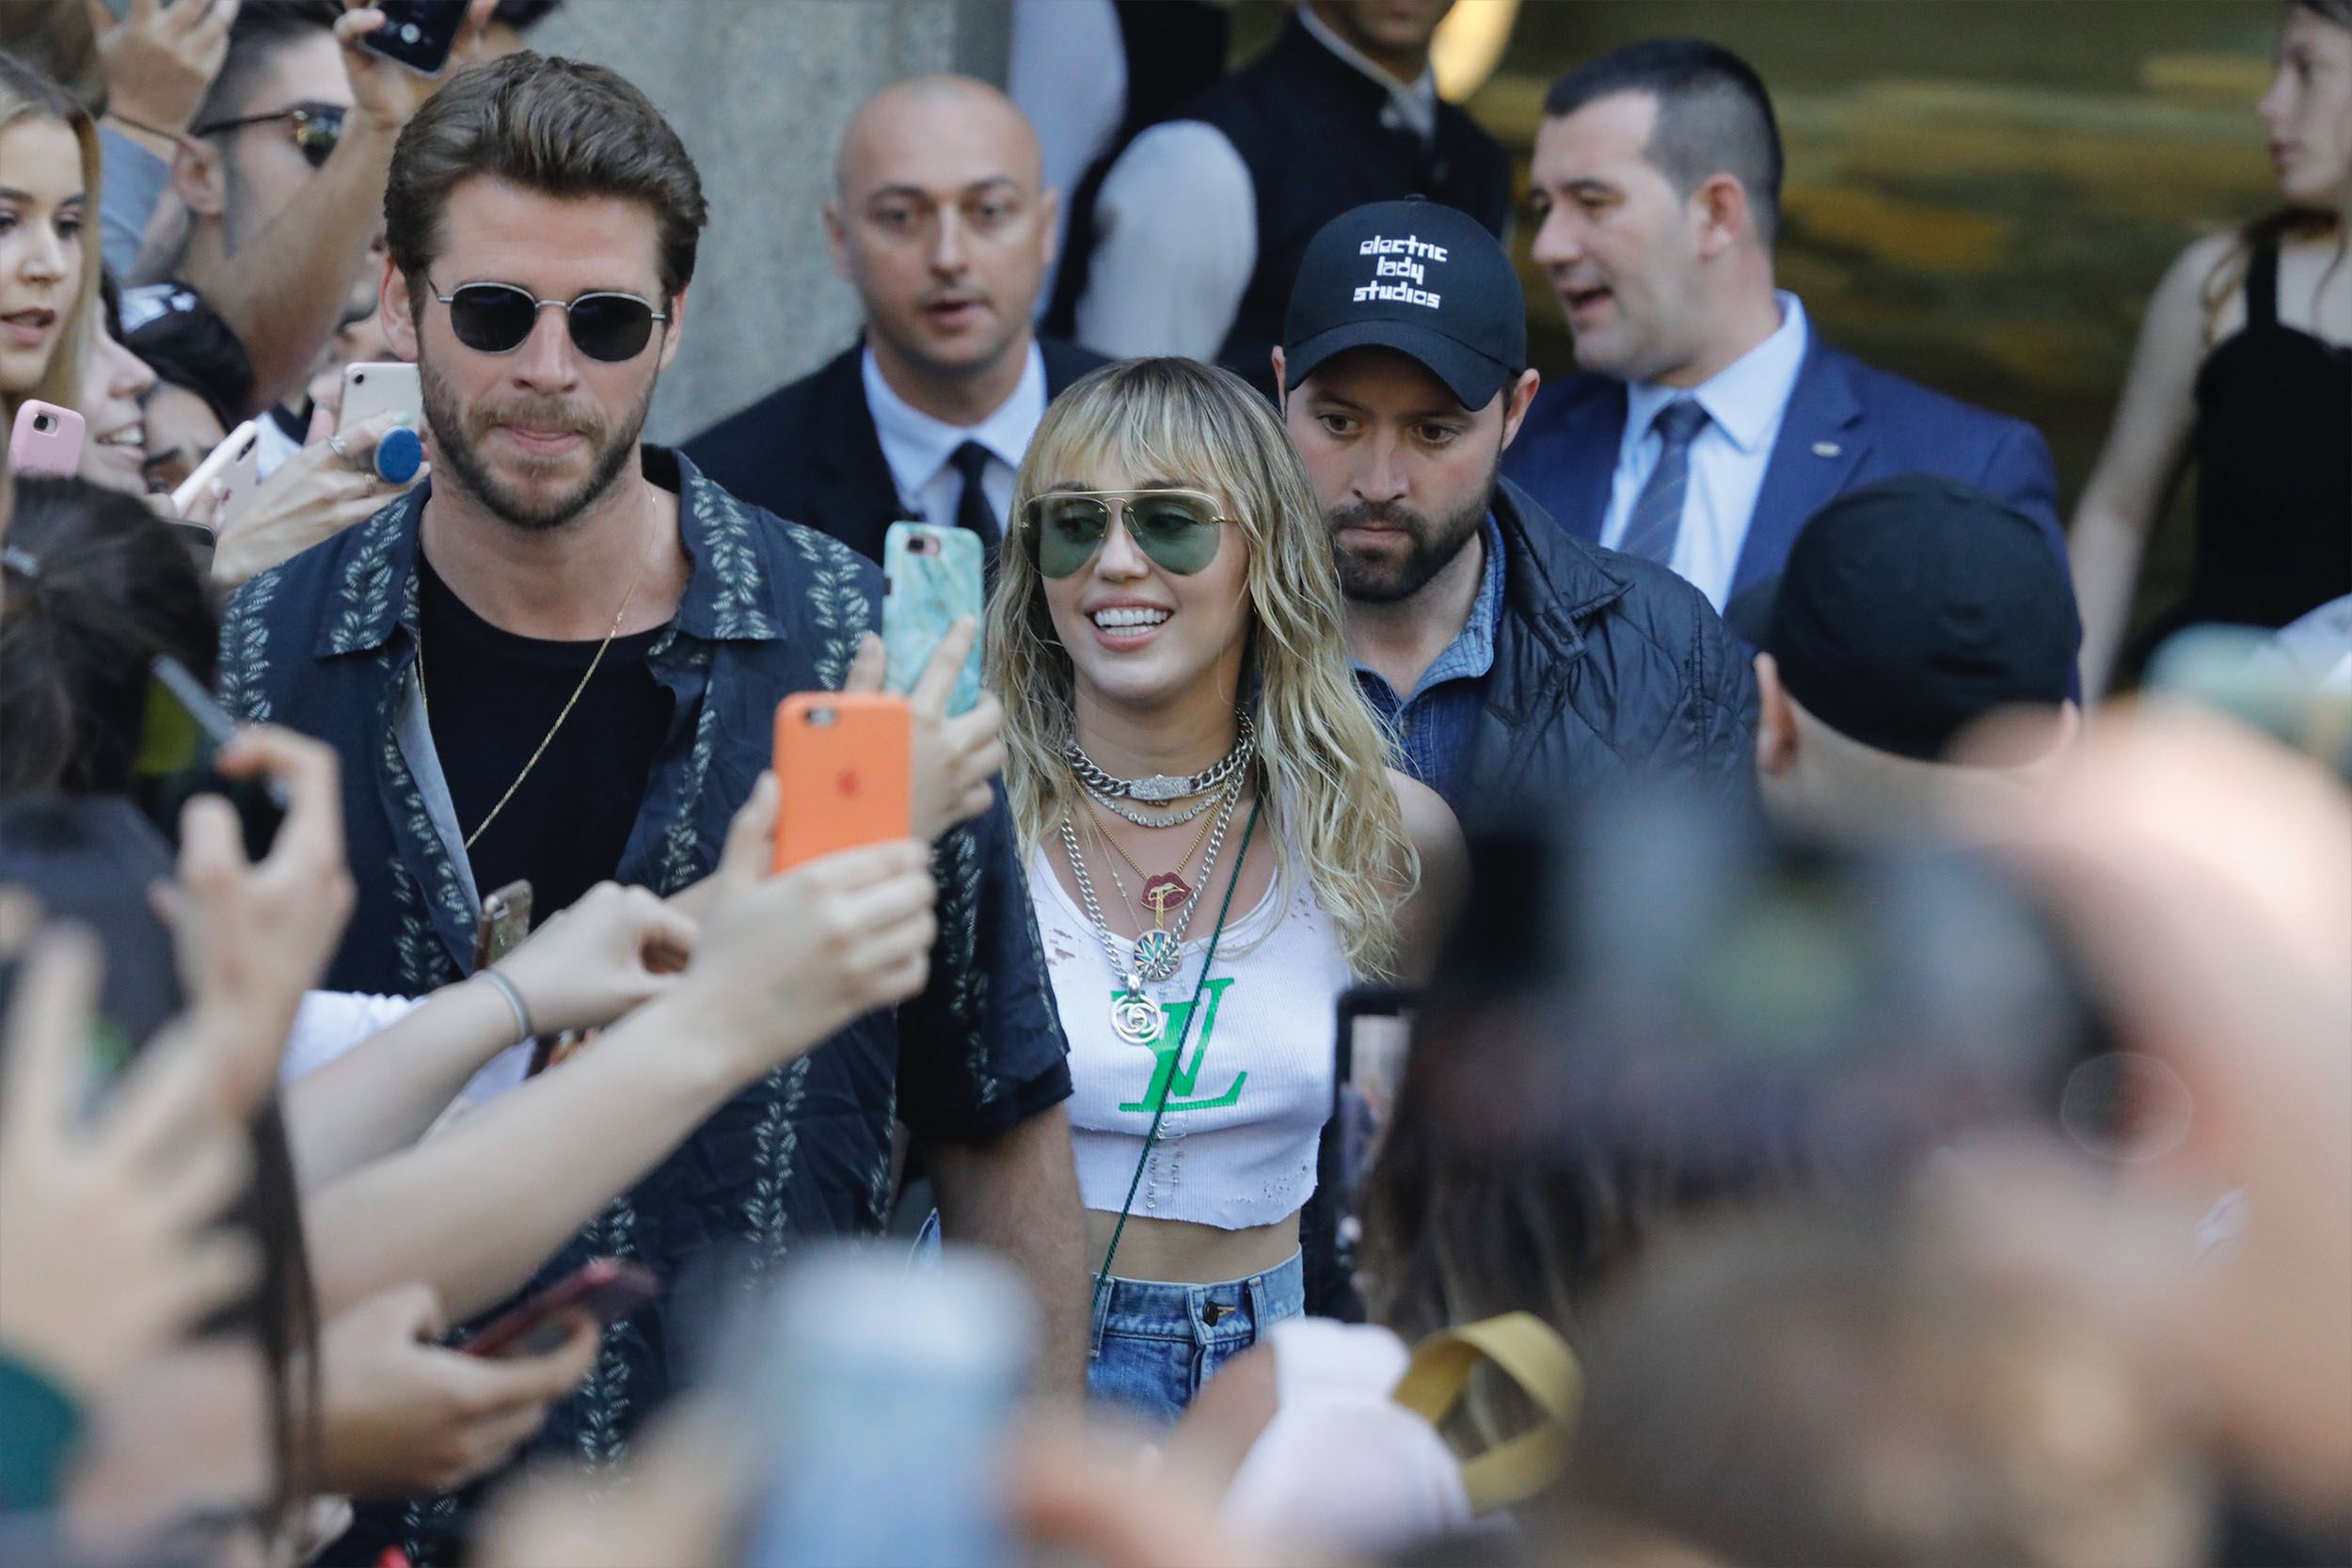 “Ella no puede ser agarrada sin su consentimiento”: la respuesta de Miley Cyrus al ataque de un fan